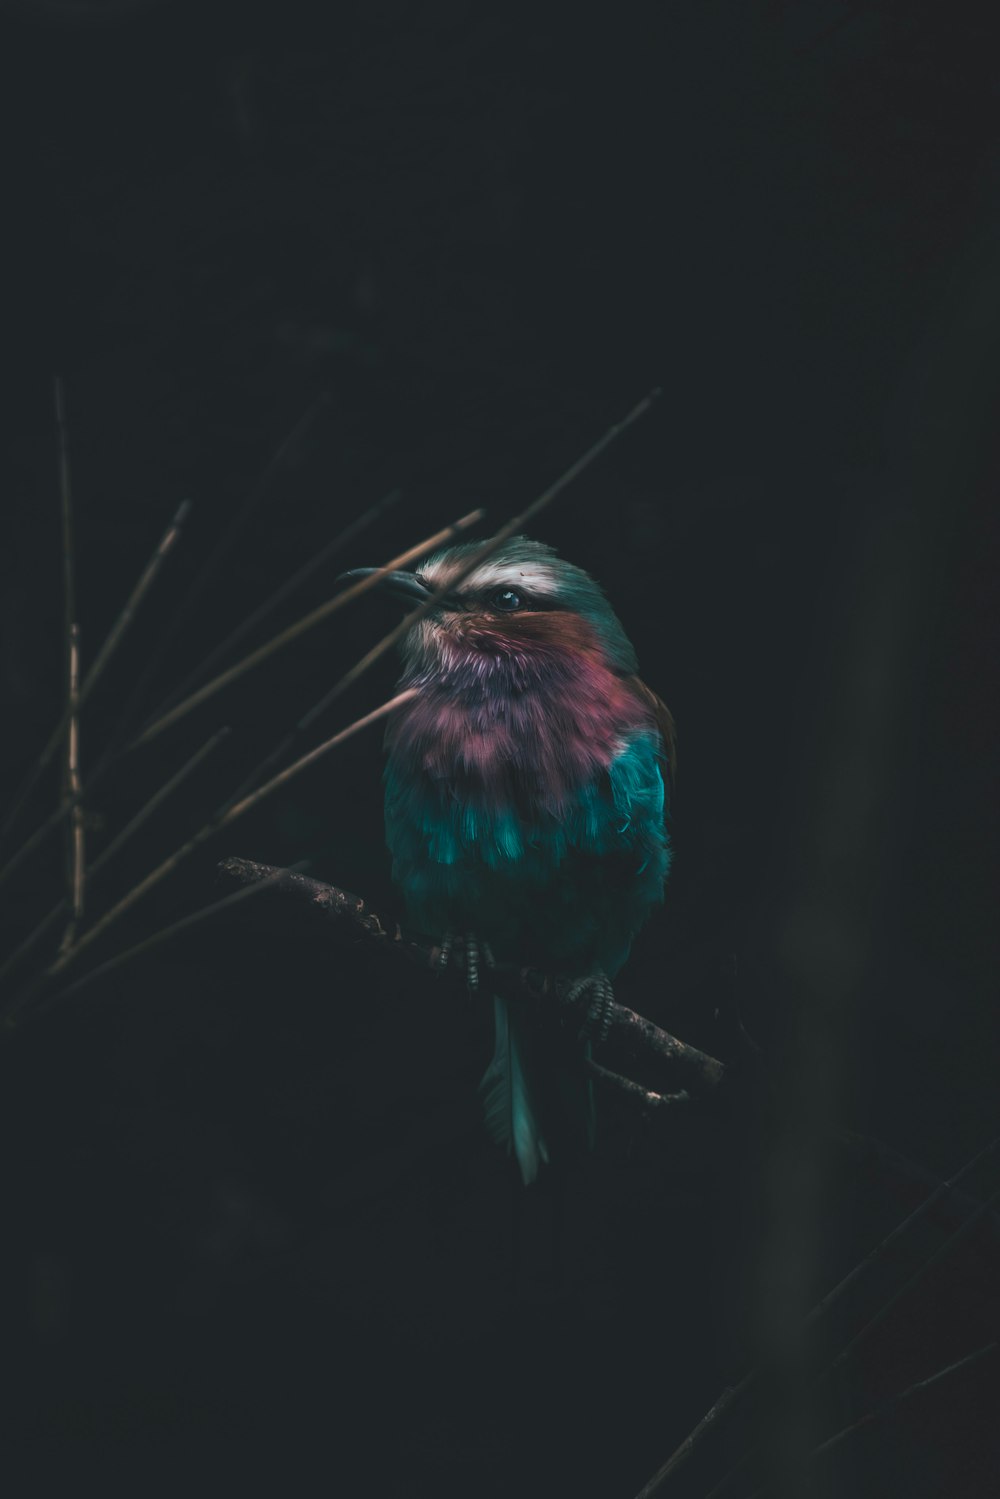 어둠 속에서 나뭇가지에 앉아 있는 형형색색의 새